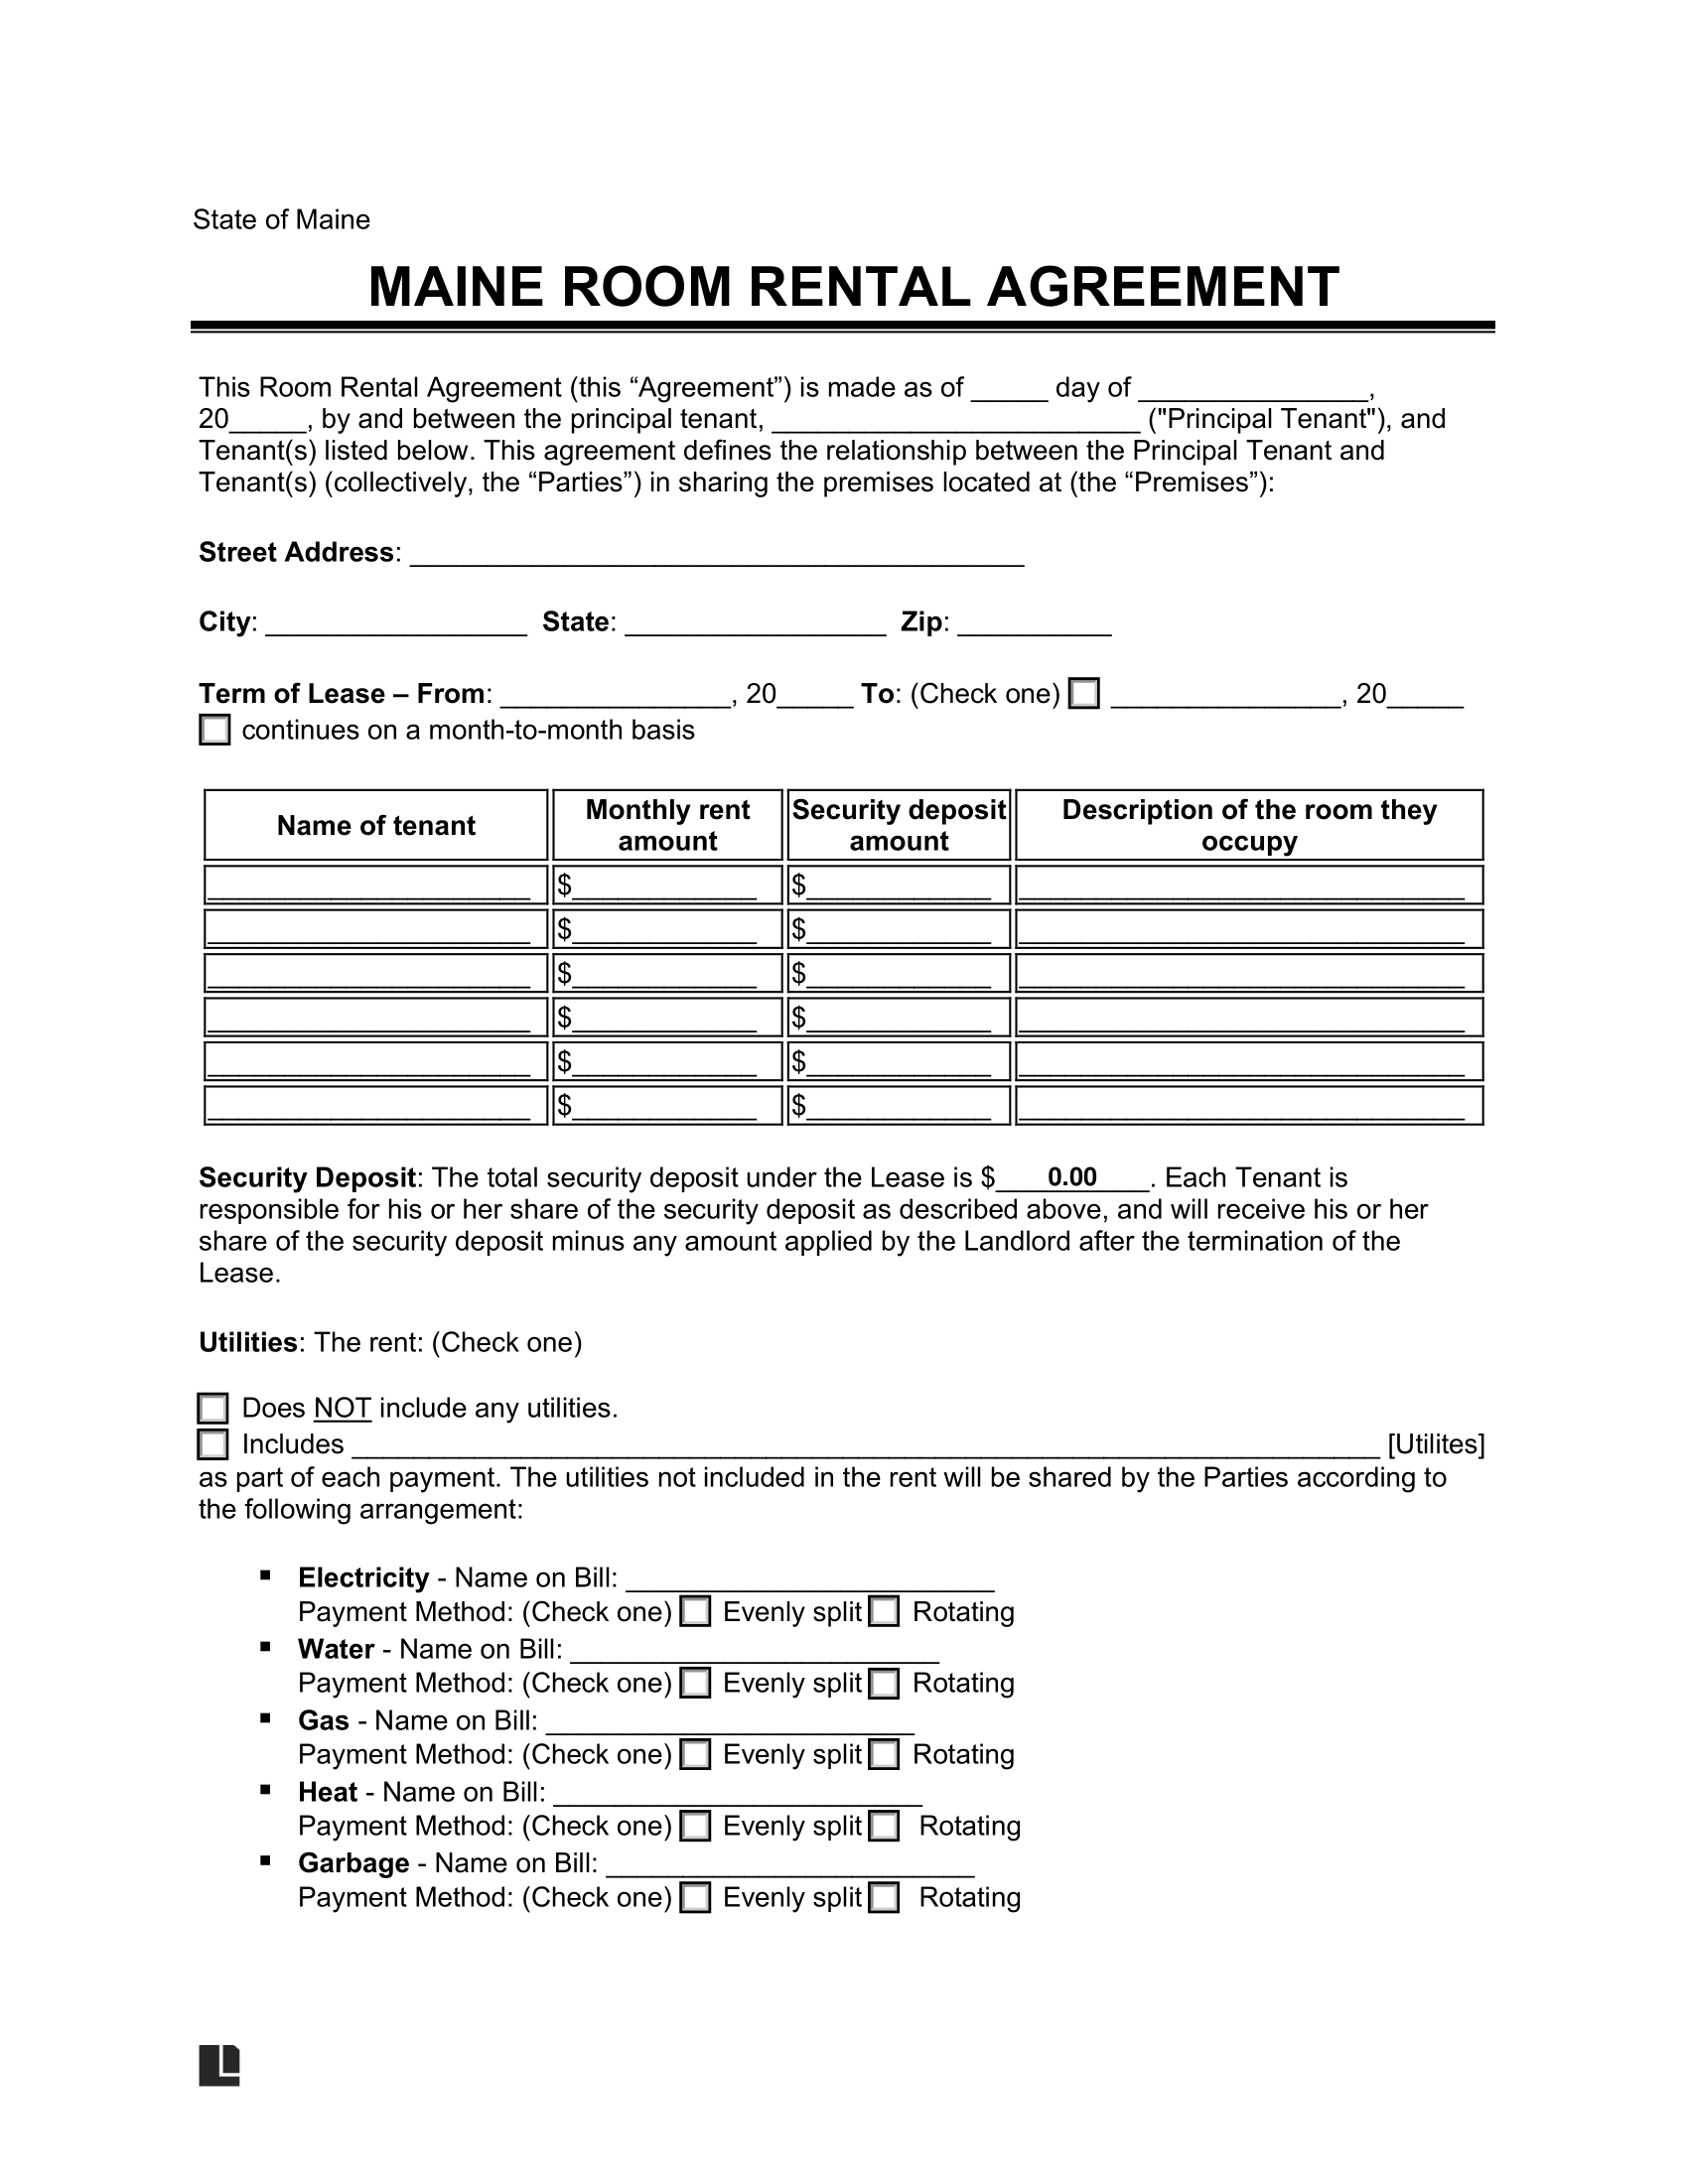 Maine Room Rental Agreement